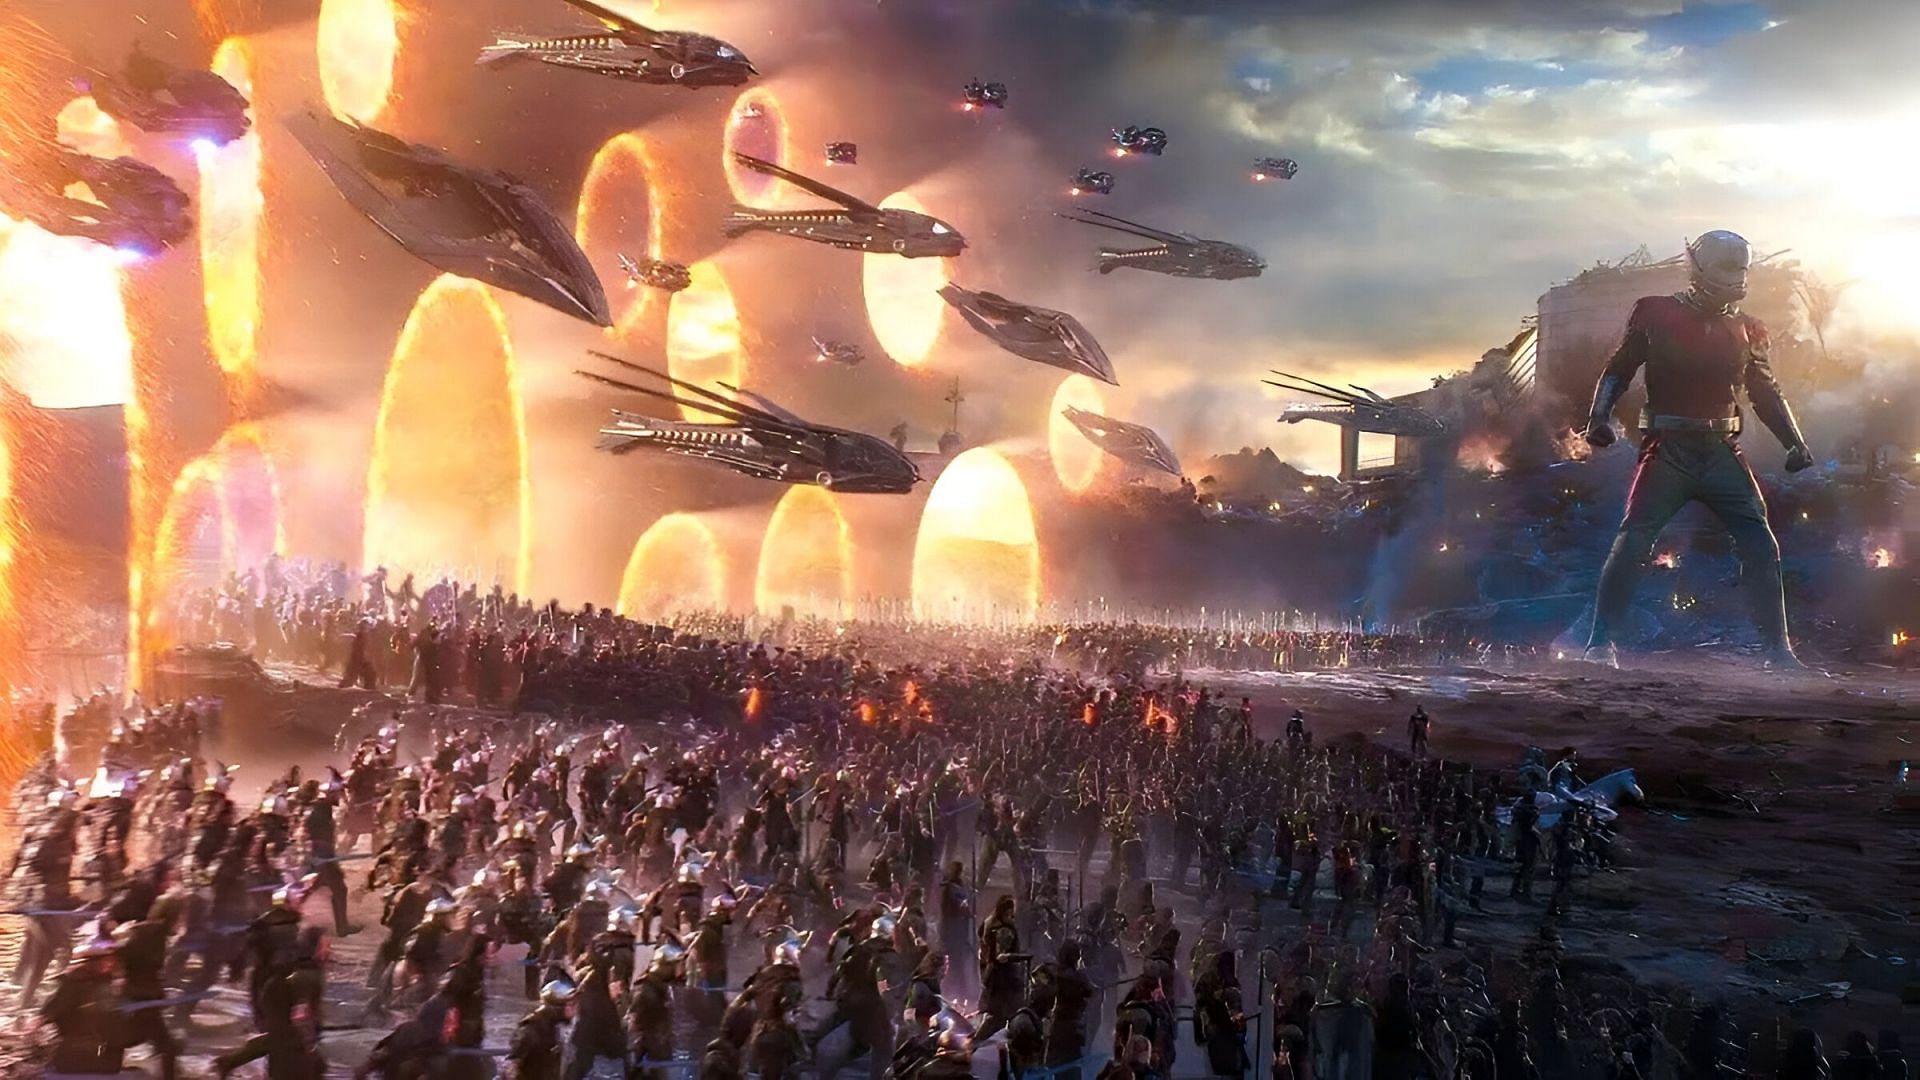 Avengers assembling at the battlefield in Avengers: Endgame (Image via Disney)